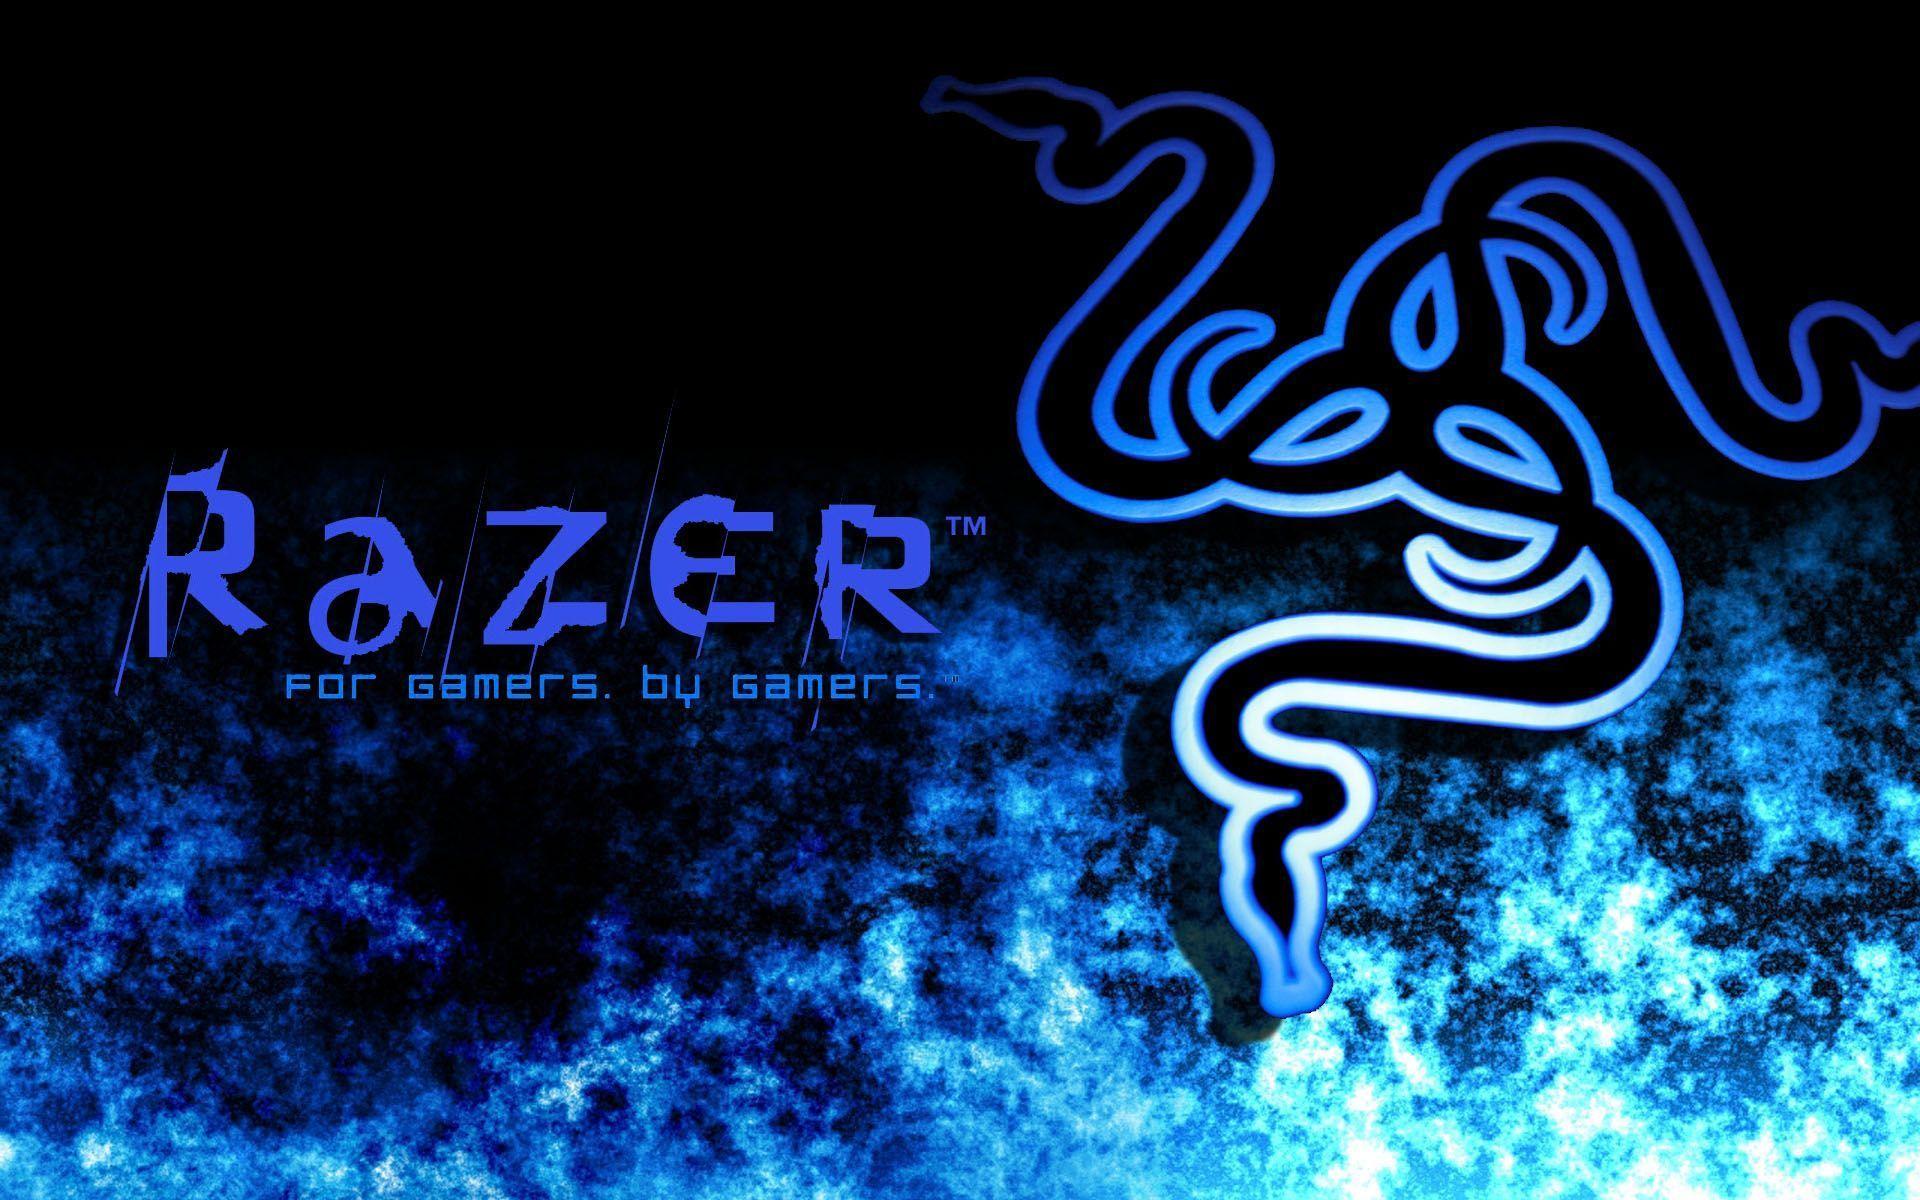 Razer Av3k Team Serious Gaming Wallpaper